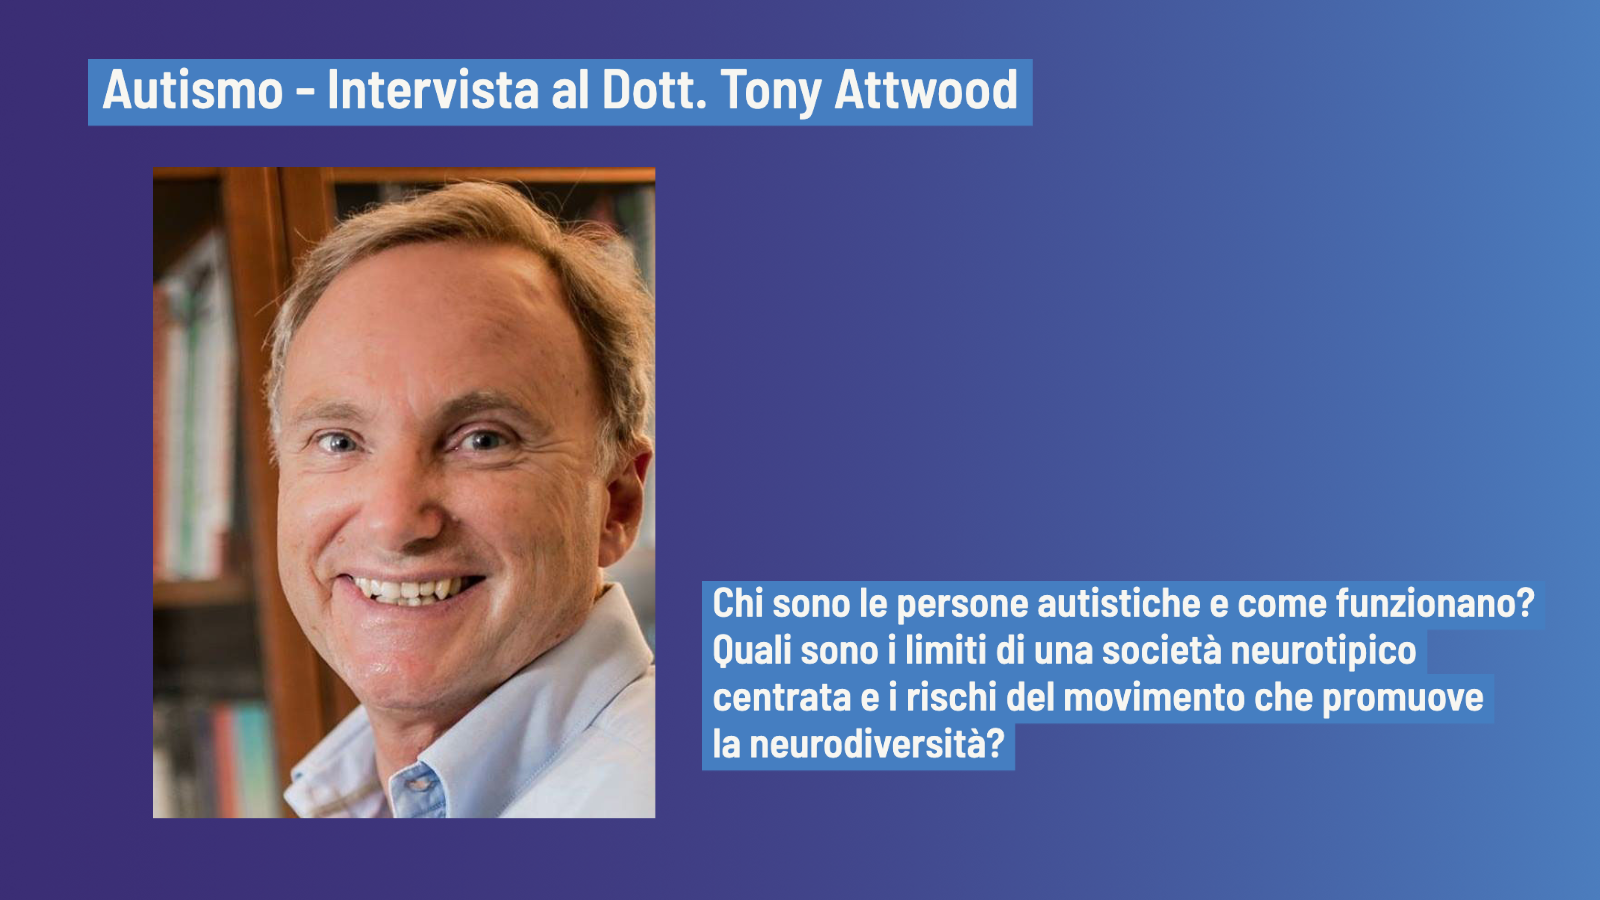 Persone autistiche e mondo del lavoro - Intervista a Tony Attwood